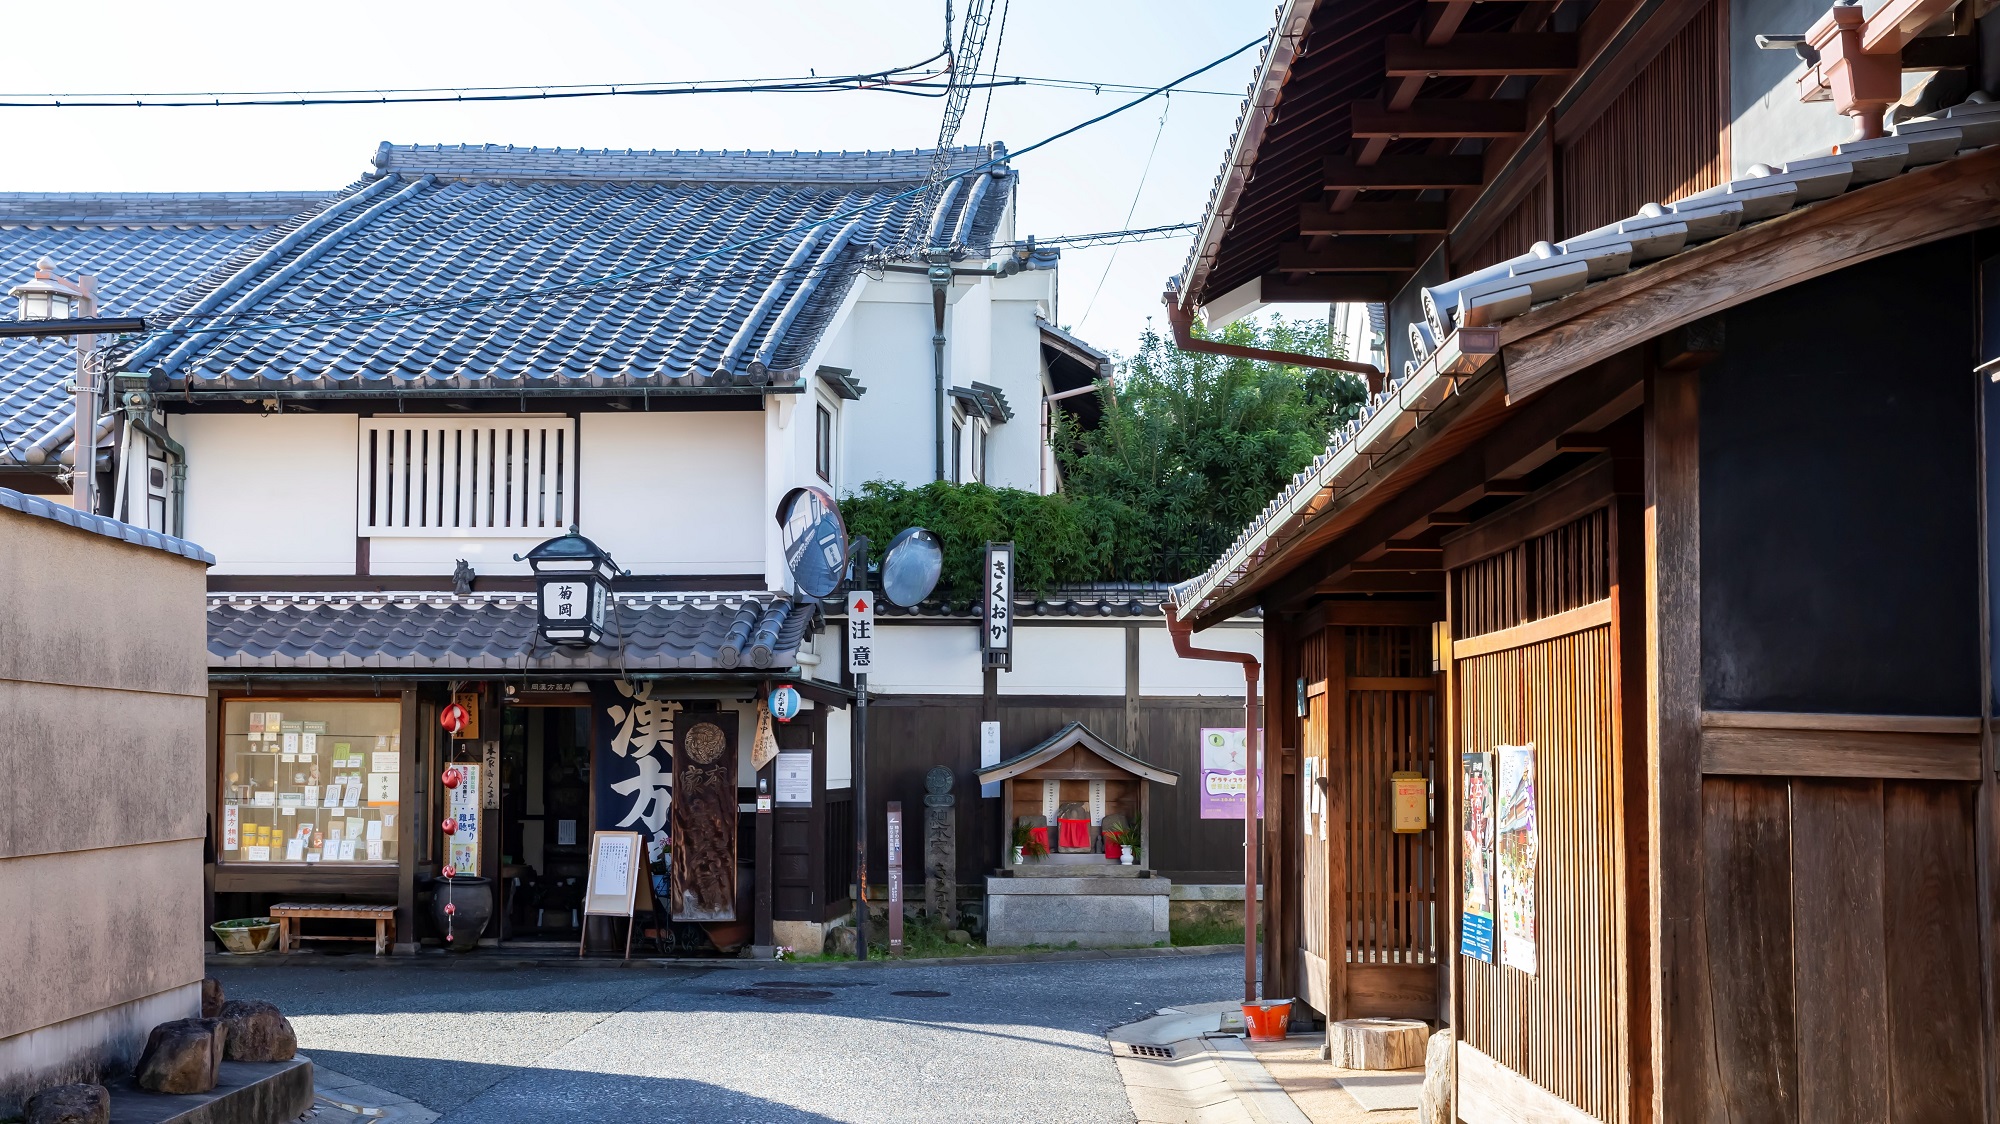 古都・奈良の旧市街で、昔ながらのまち並みを残す、 奈良観光の人気エリア・ならまち。